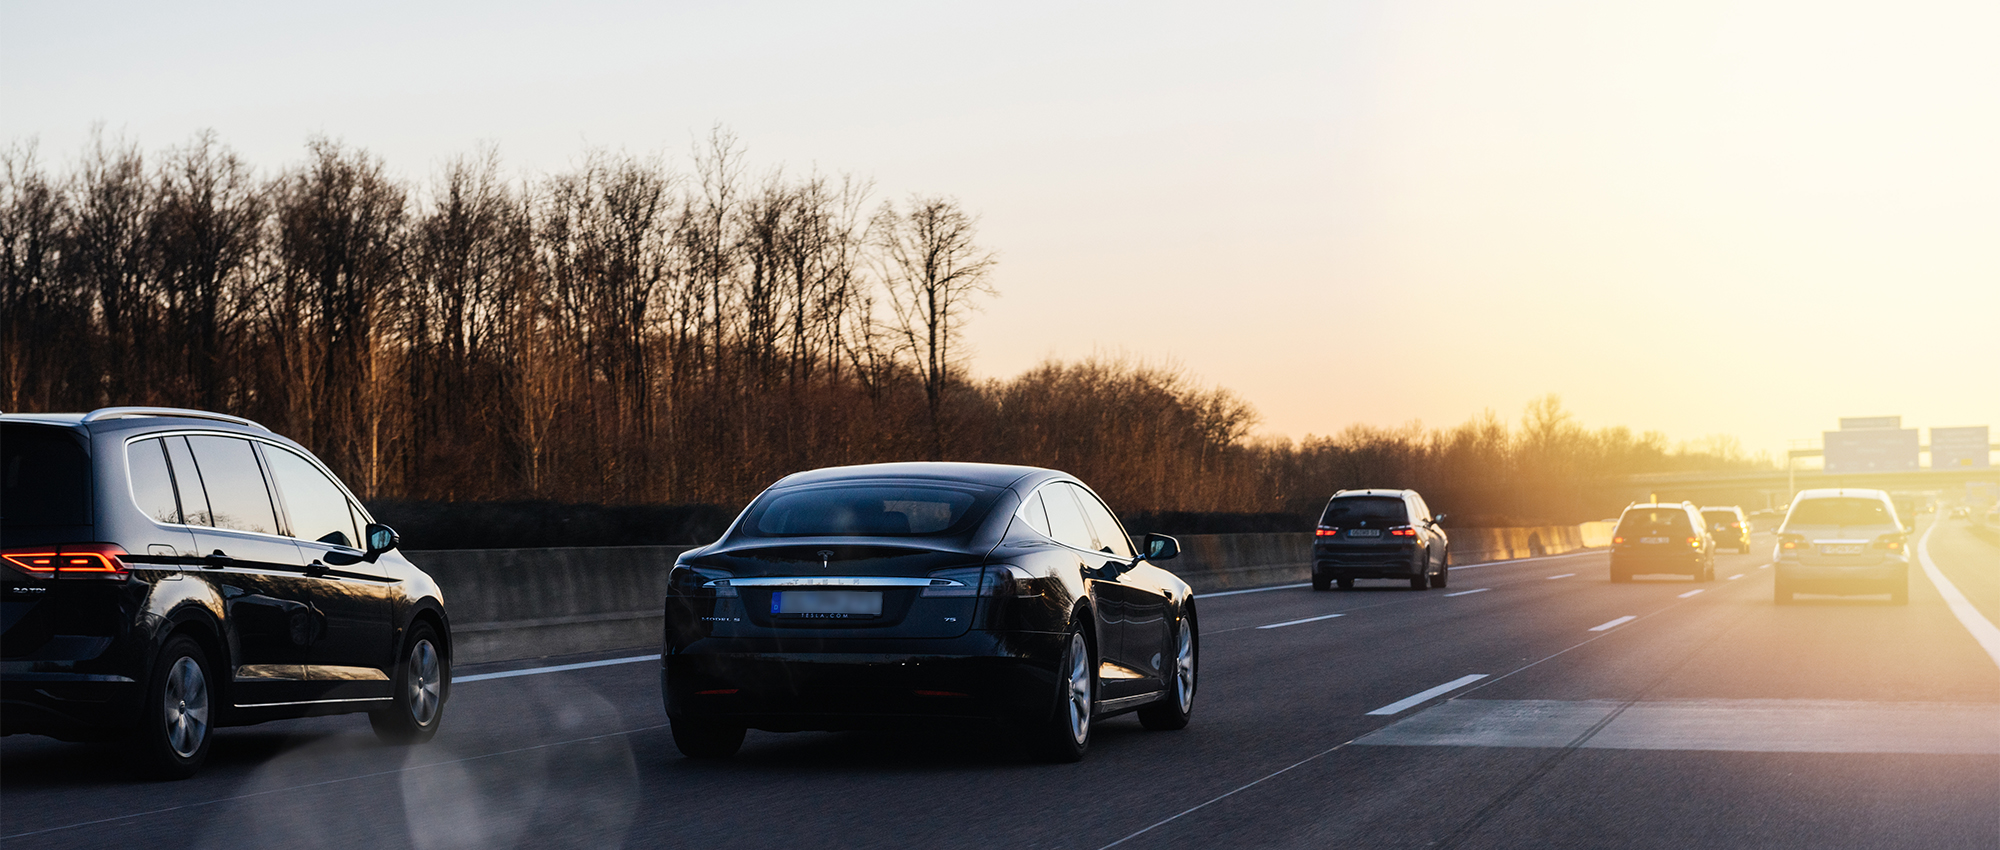 Autos fahren auf einer Autobahn im Sonnenuntergang.